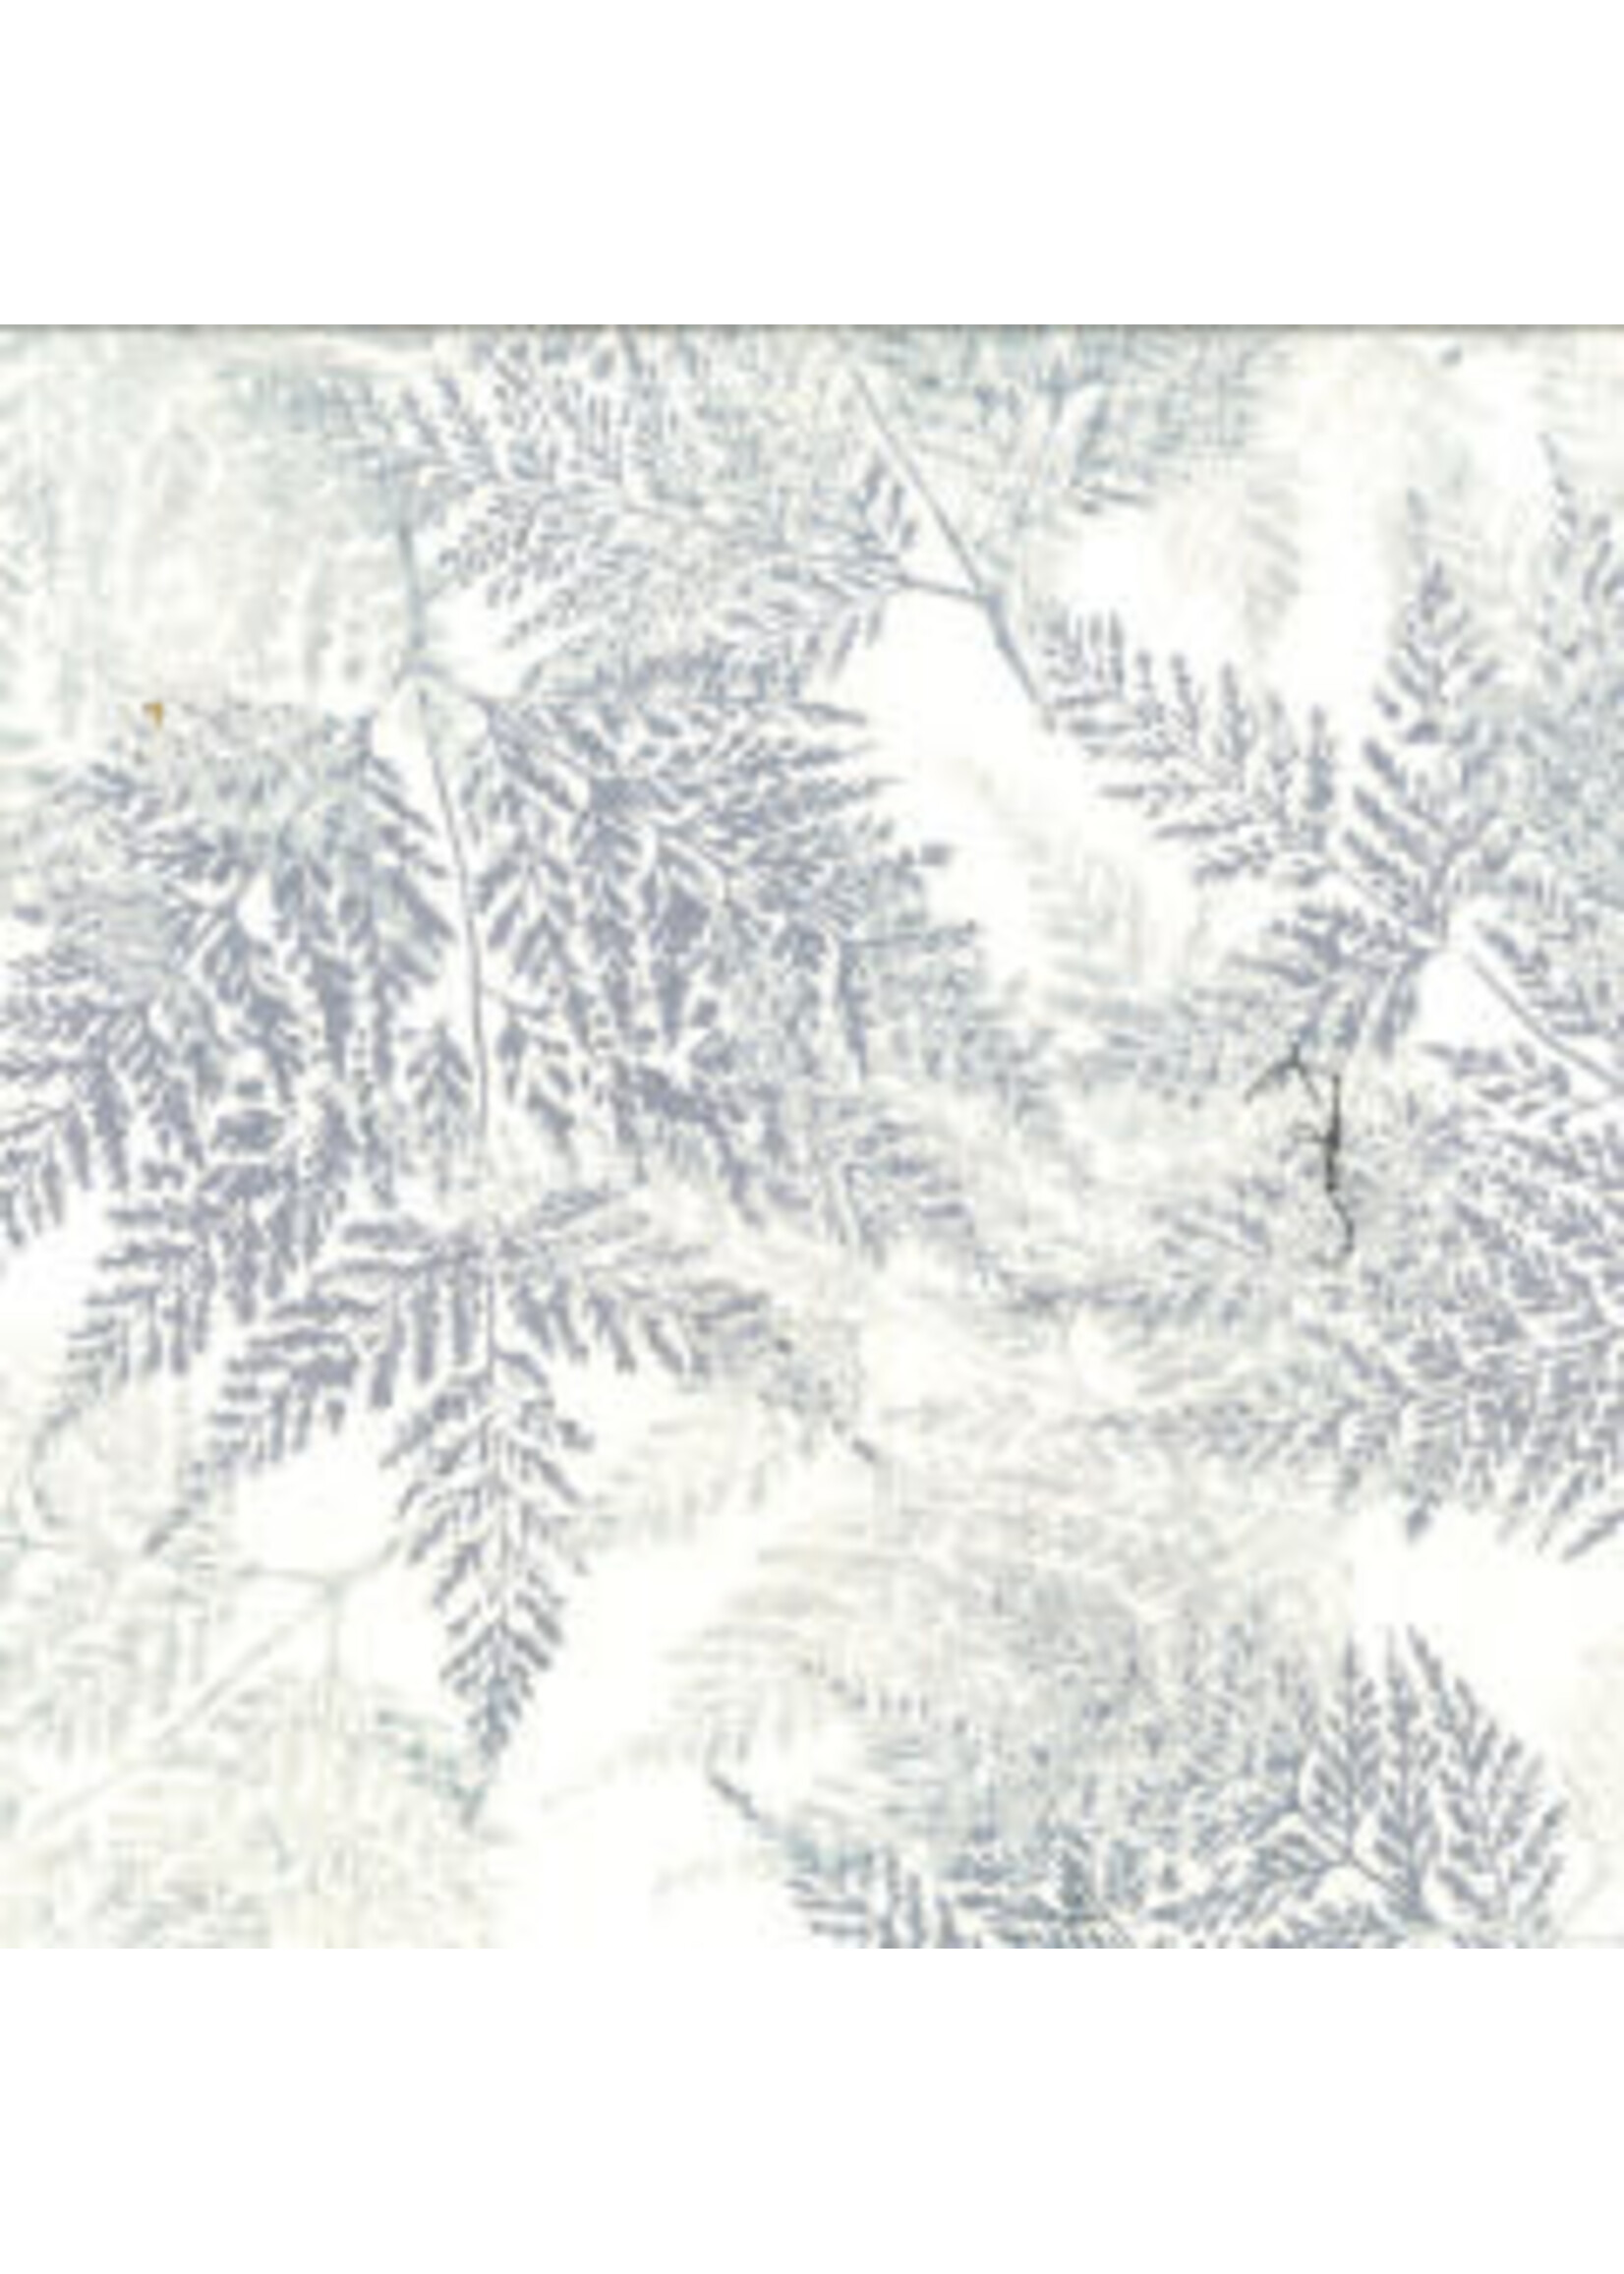 Hoffman Fabrics Bali Batik Skeleton Leaves - White Wash - Coupon - 100 cm x 110 cm